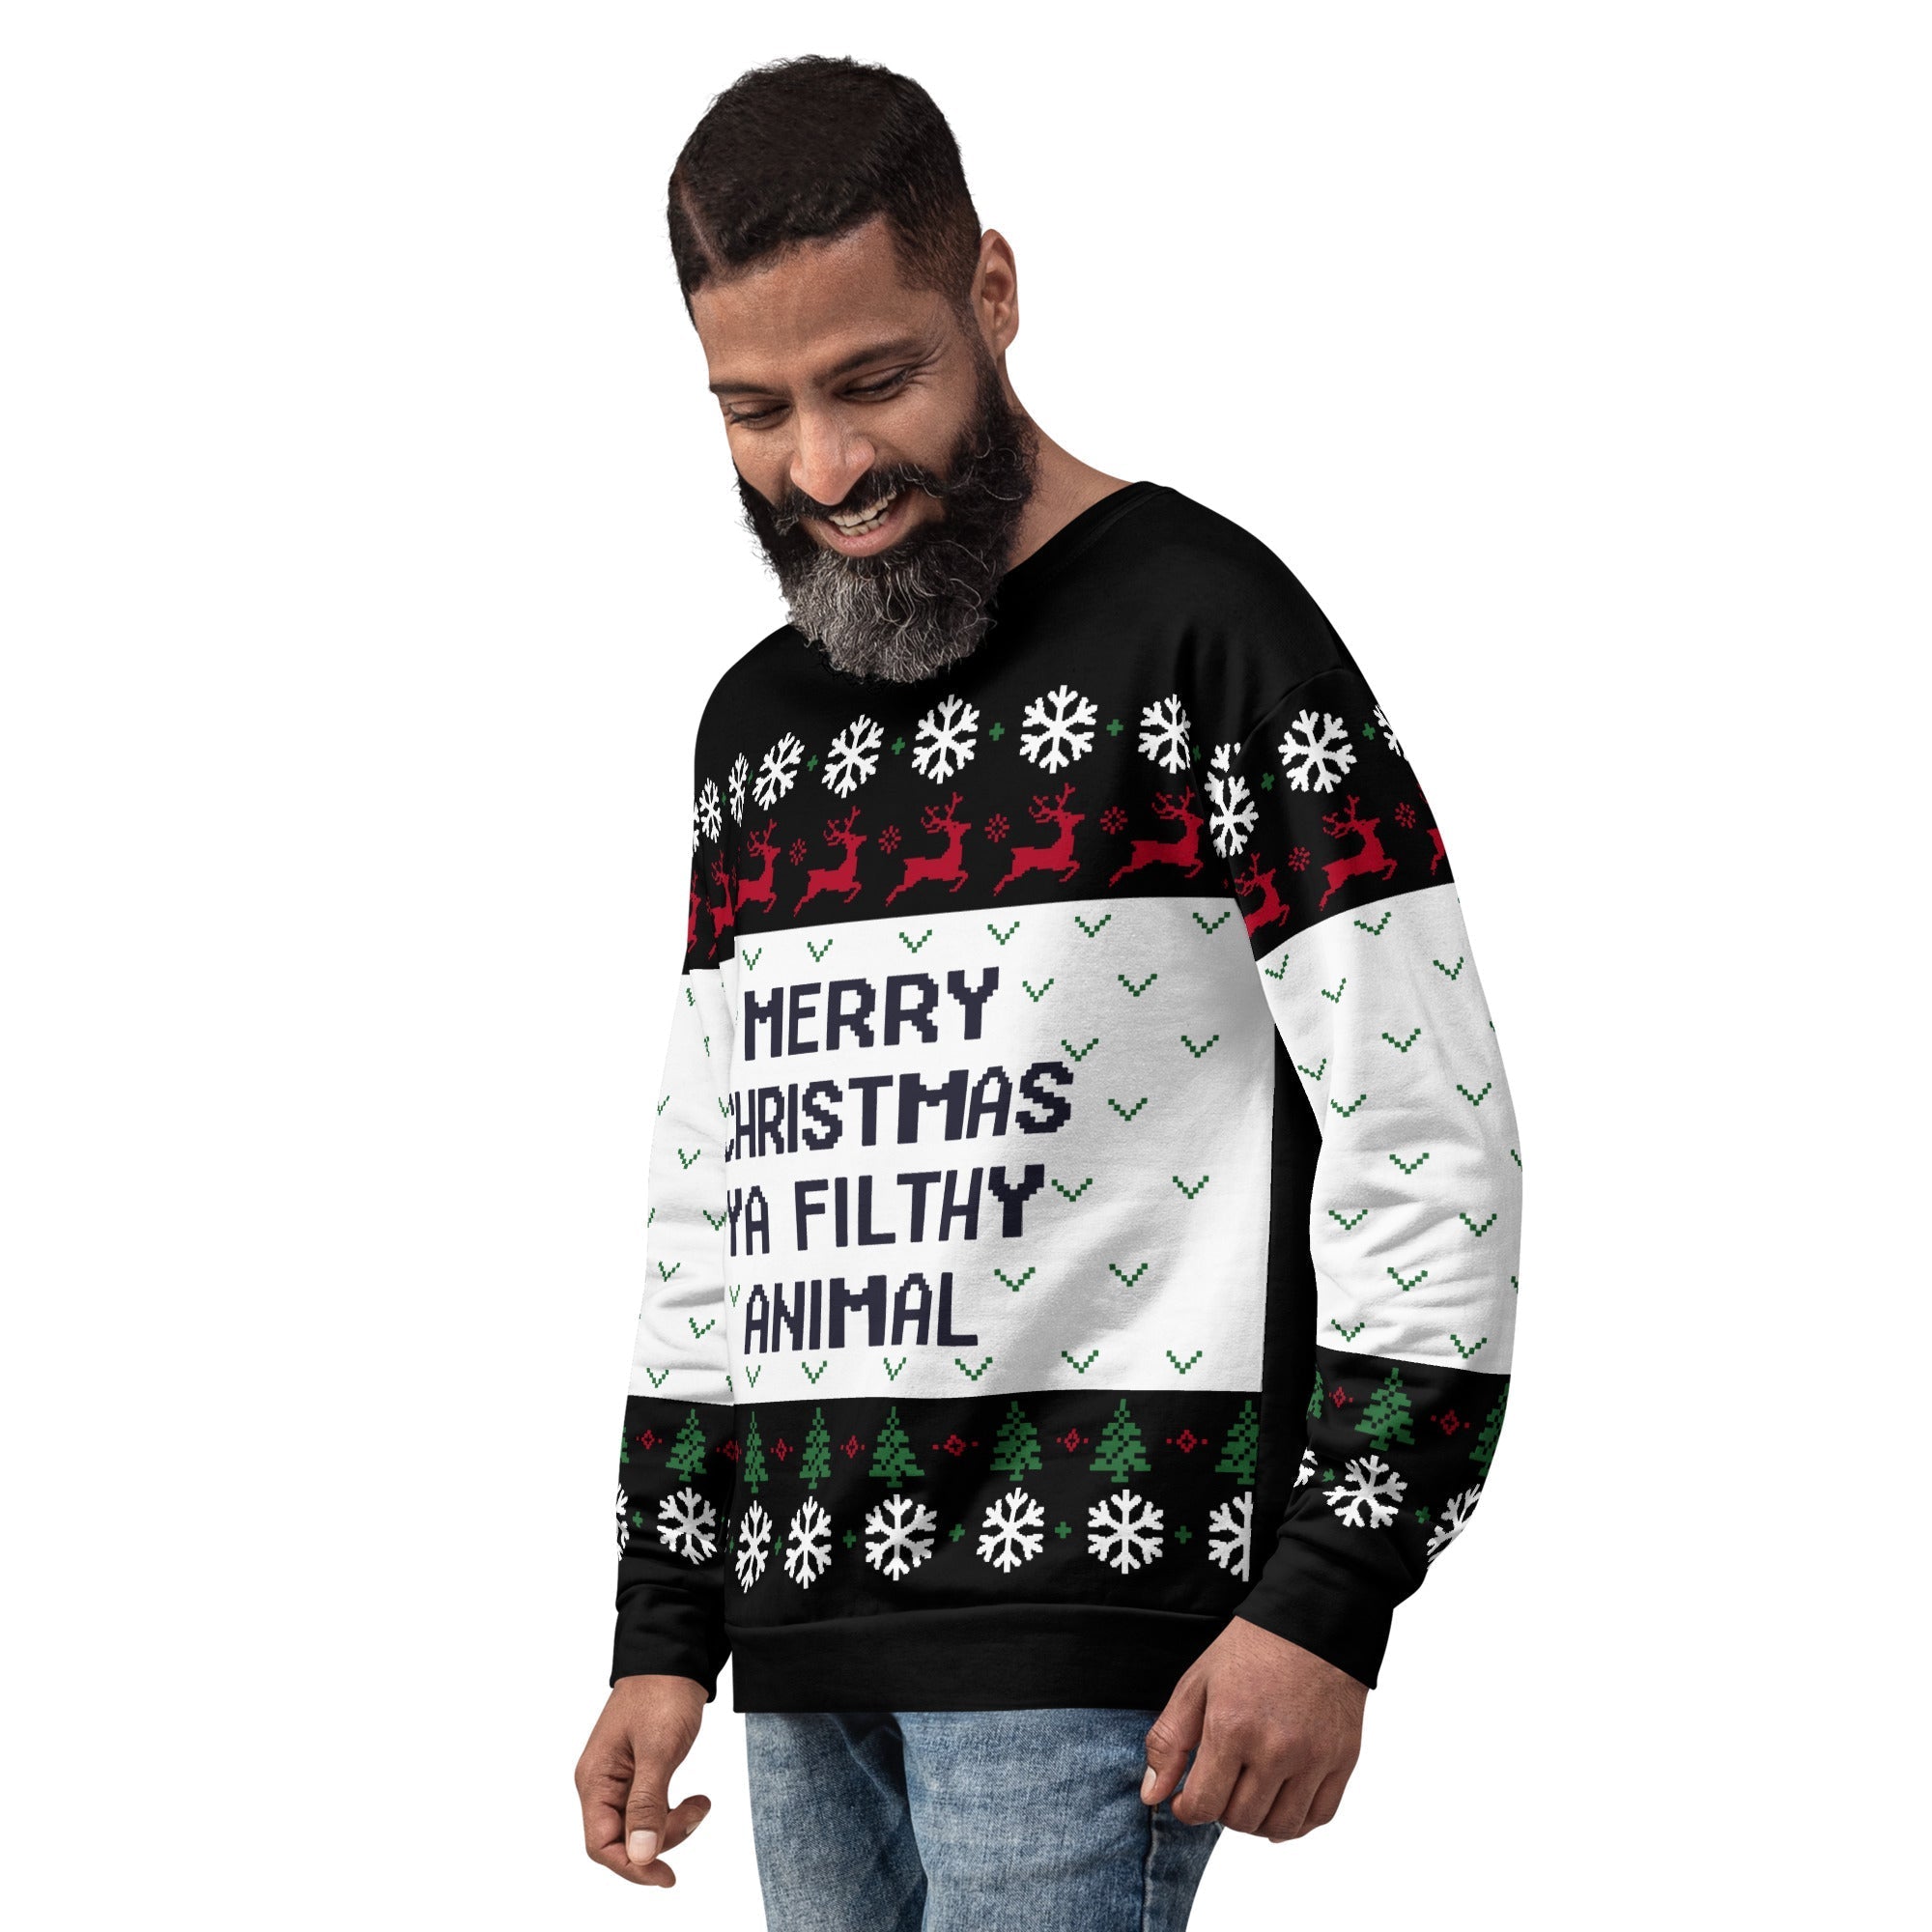 Merry Christmas Ugly Sweatshirt